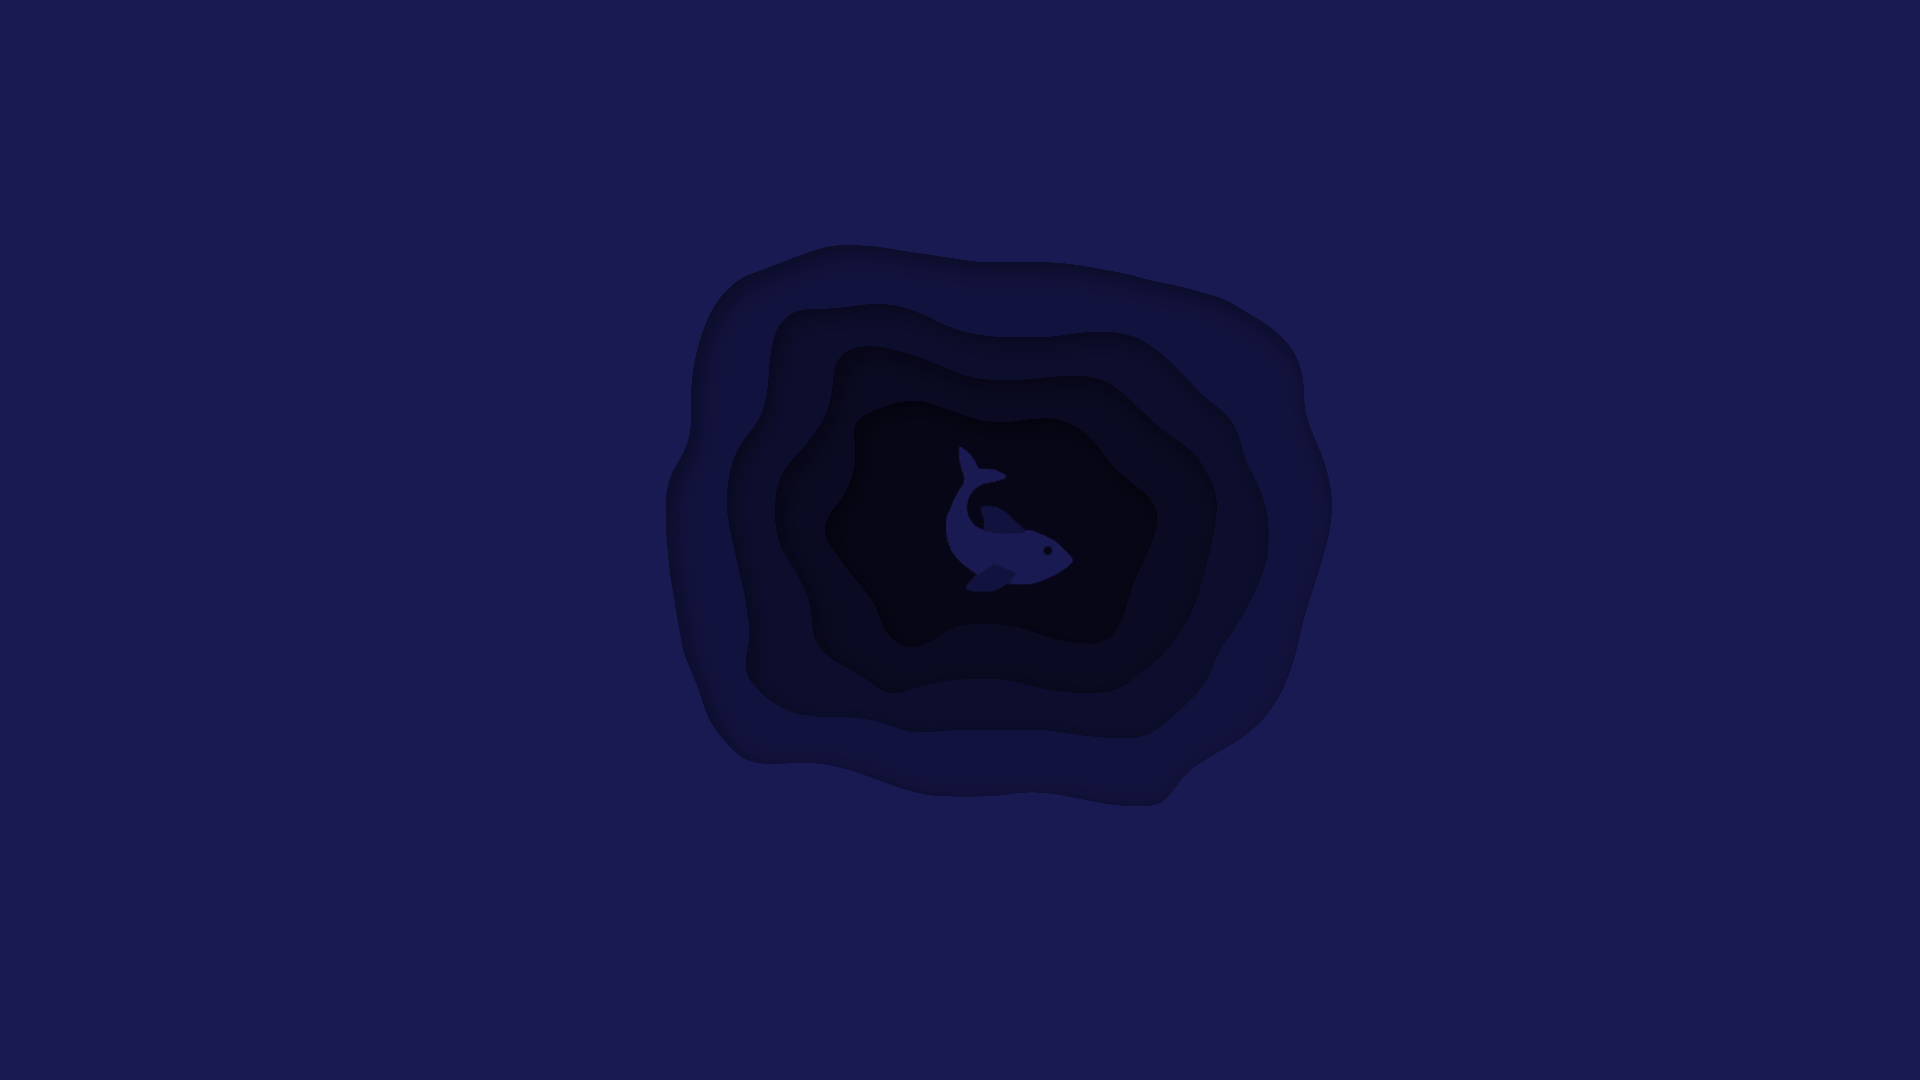 Water Fish Blue Minimalism 1920x1080